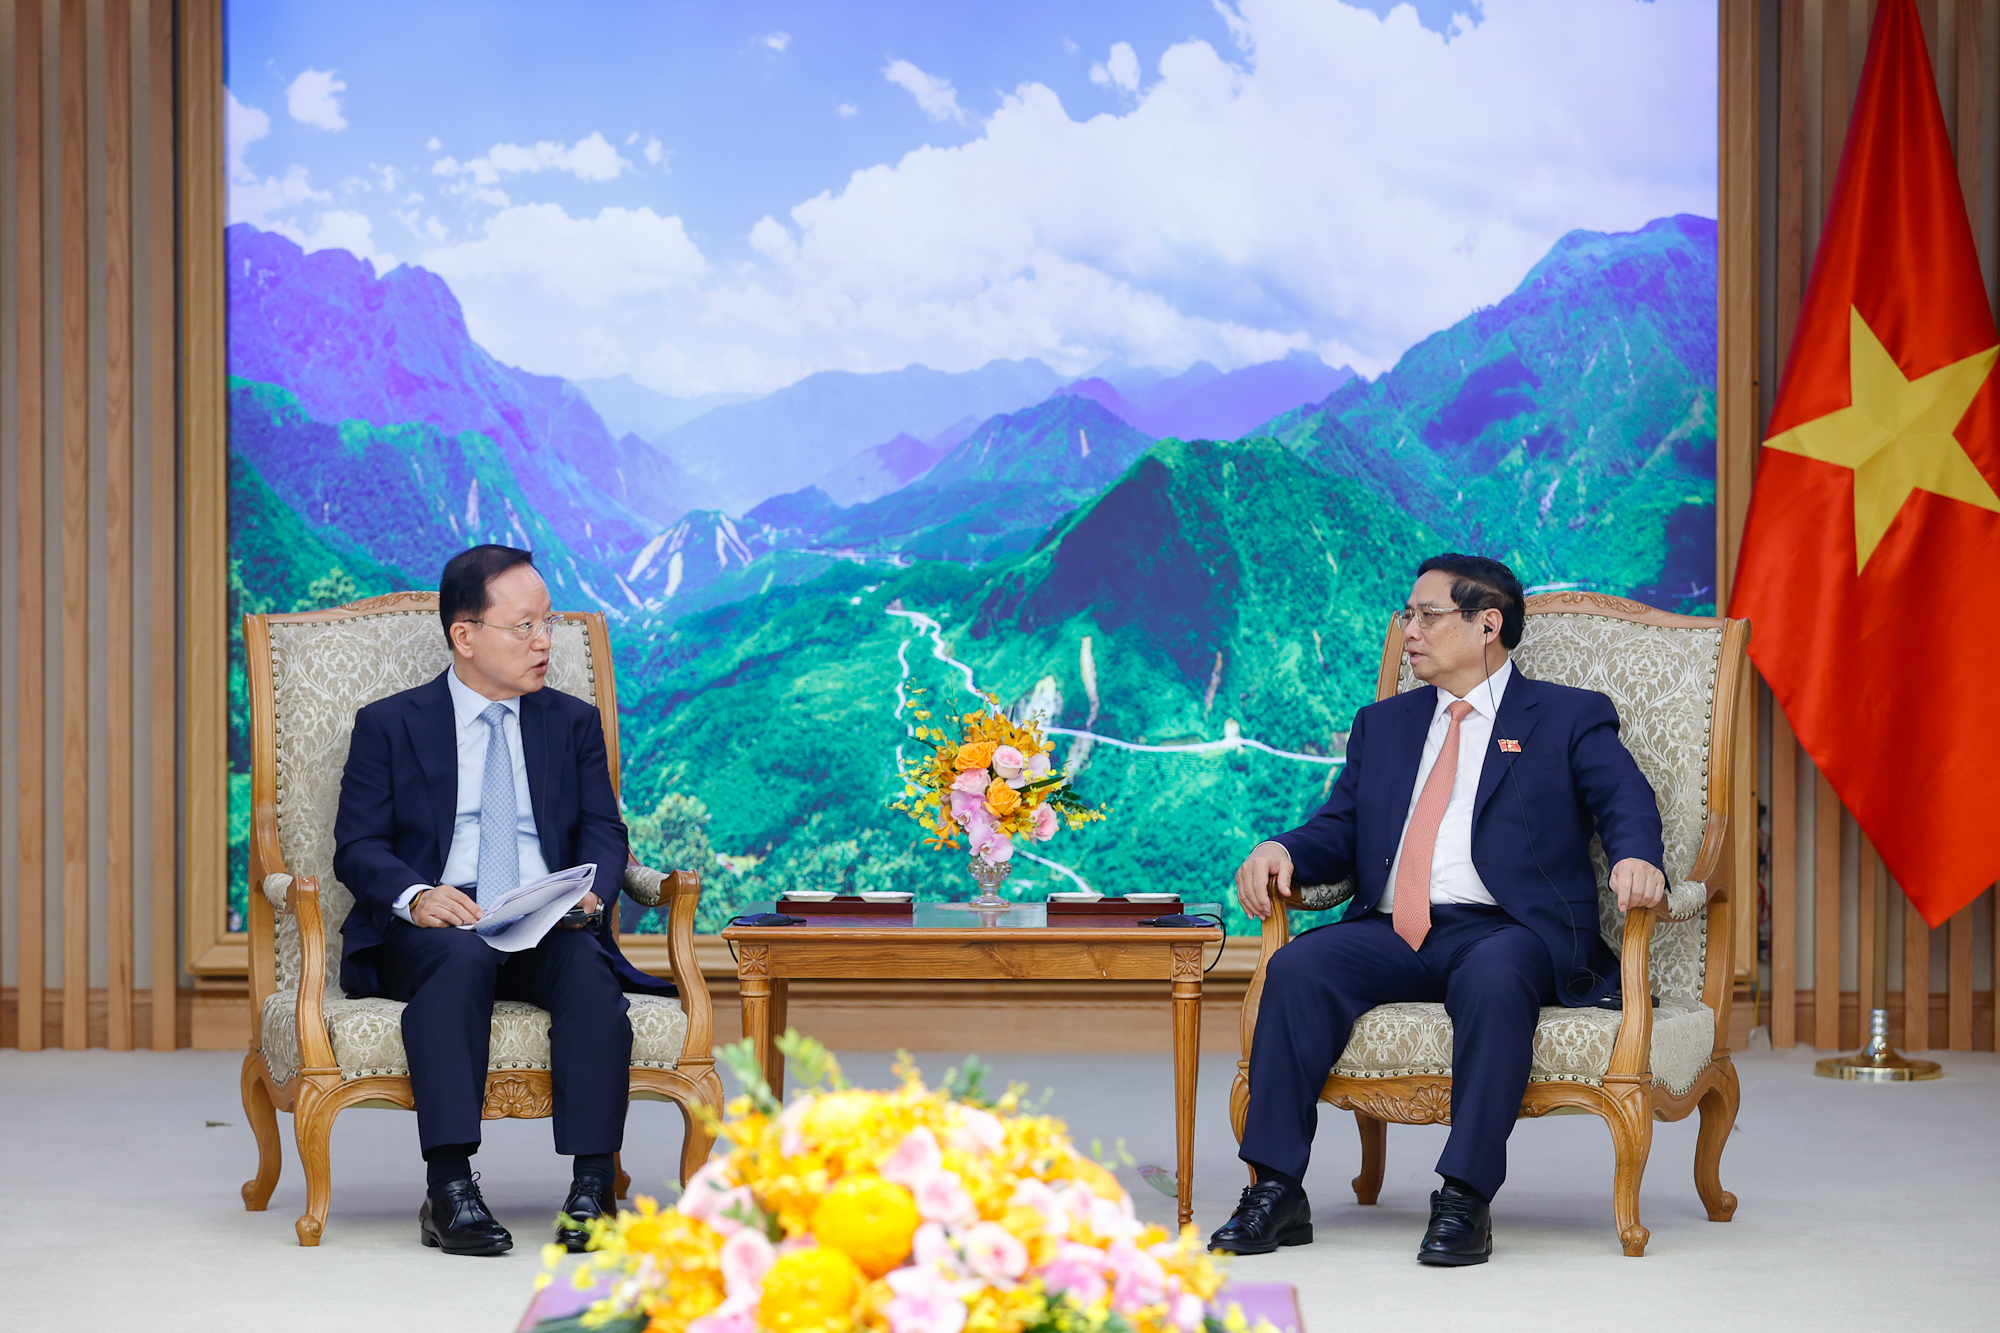 Thủ tướng mong muốn Samsung tiếp tục hỗ trợ Việt Nam nâng cao hơn nữa năng lực doanh nghiệp trong nước để có thể tham gia có hiệu quả hơn chuỗi cung ứng, trở thành đối tác trong hệ sinh thái của Samsung - Ảnh: VGP/Nhật Bắc